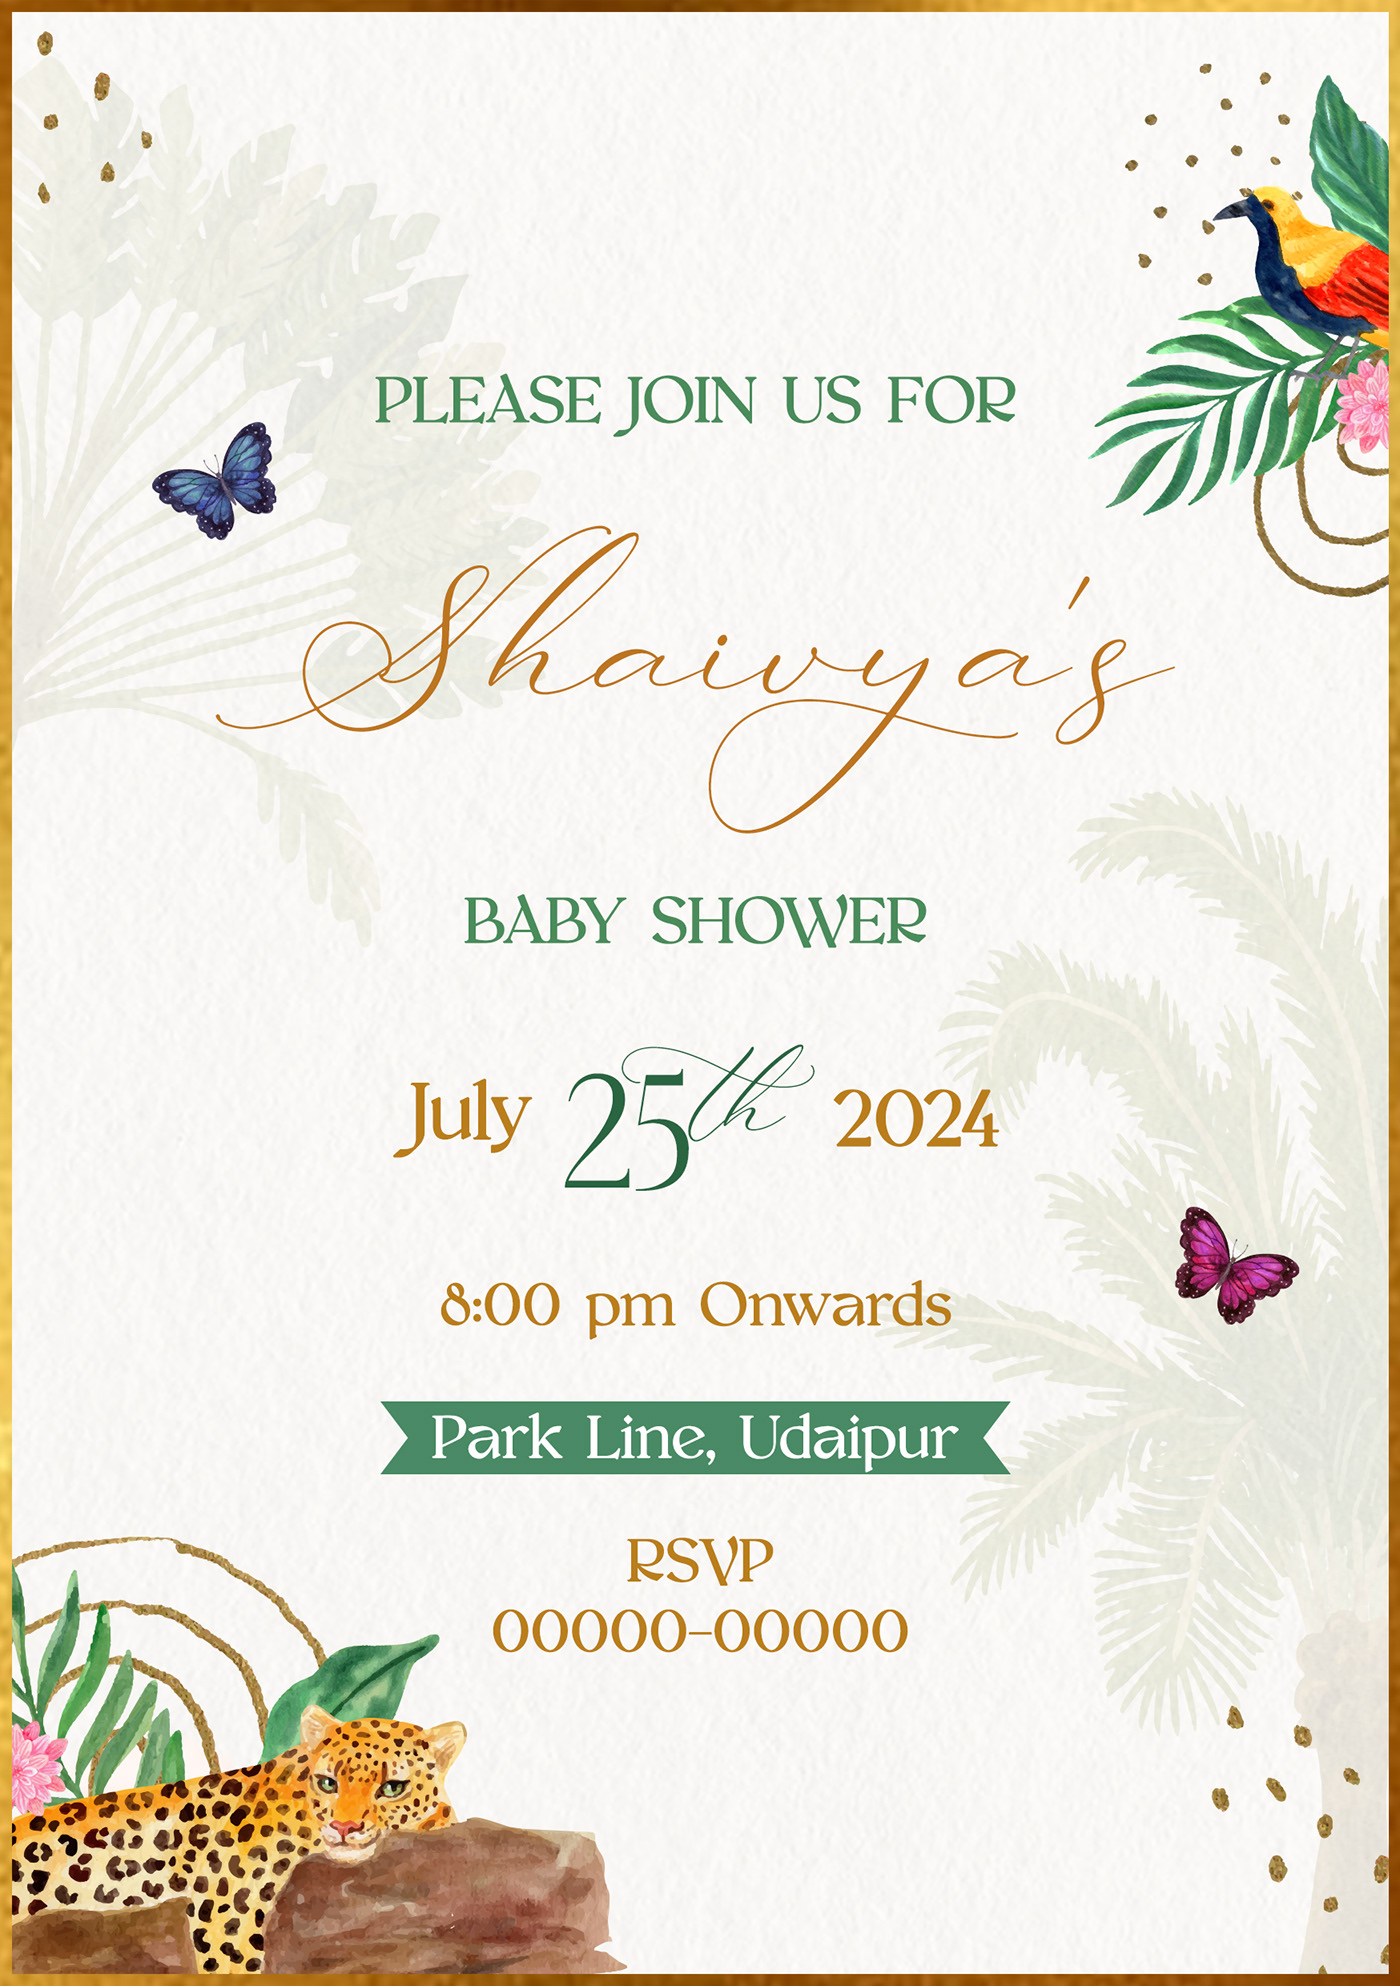 invite Invitation invite design wedding invitation save the date card eInvite ecard digital invite